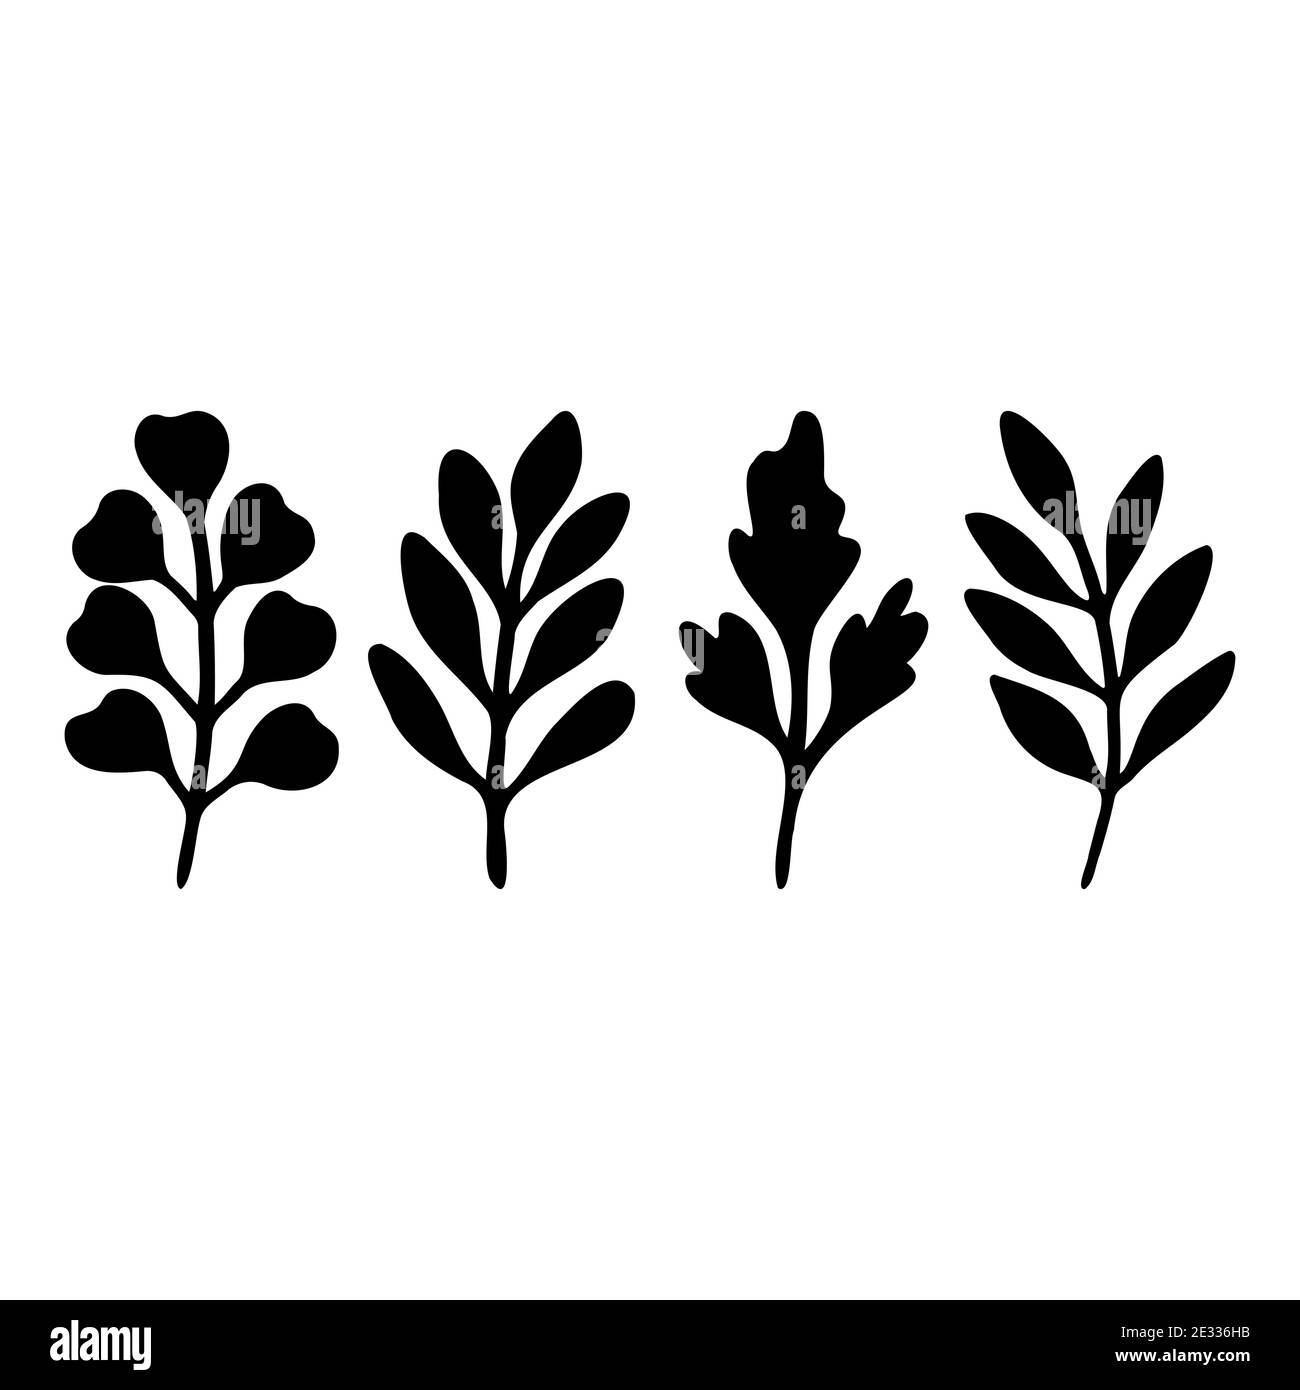 Schwarze Blätter auf Ästen. Von Hand gezeichnete Blätter isoliert auf weißem Hintergrund. Pflanze Blätter Silhouetten. Flache Vektorgrafik. . Vektorgrafik Stock Vektor